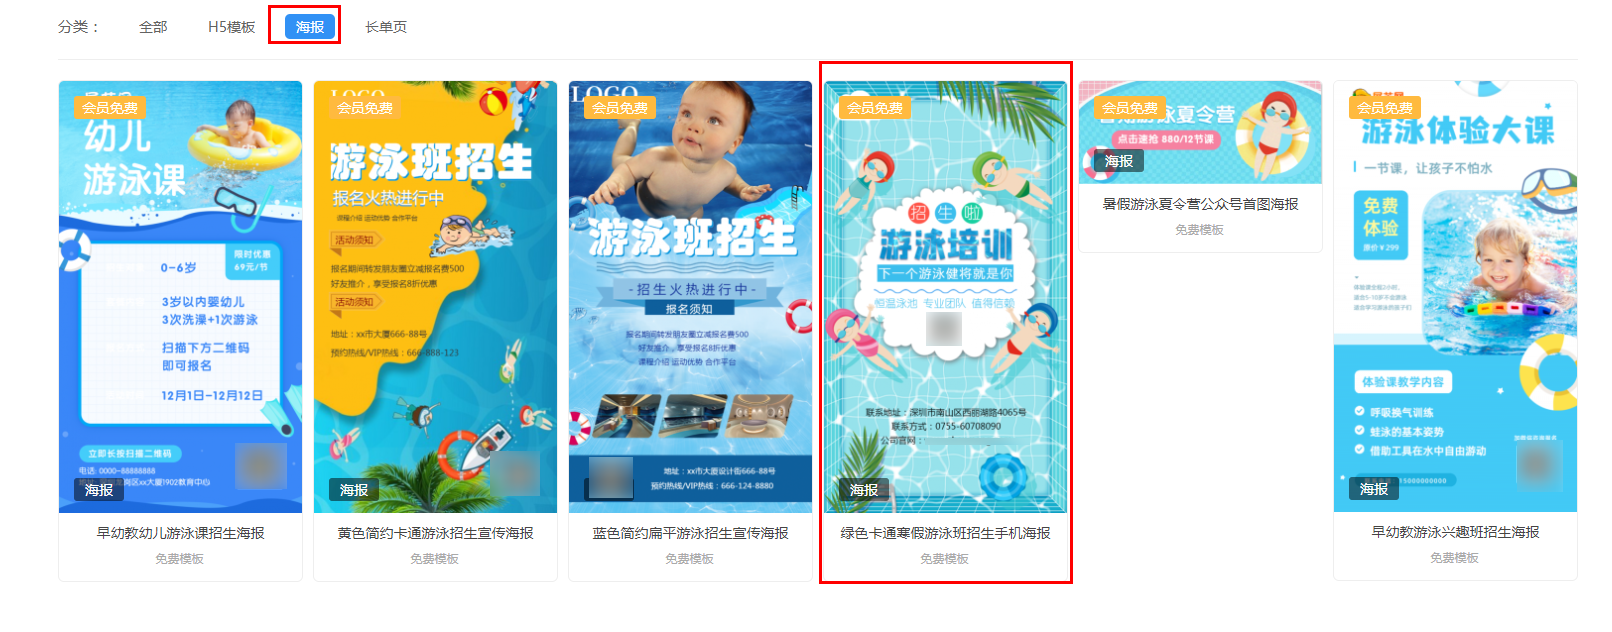 游泳招生宣传海报(1)